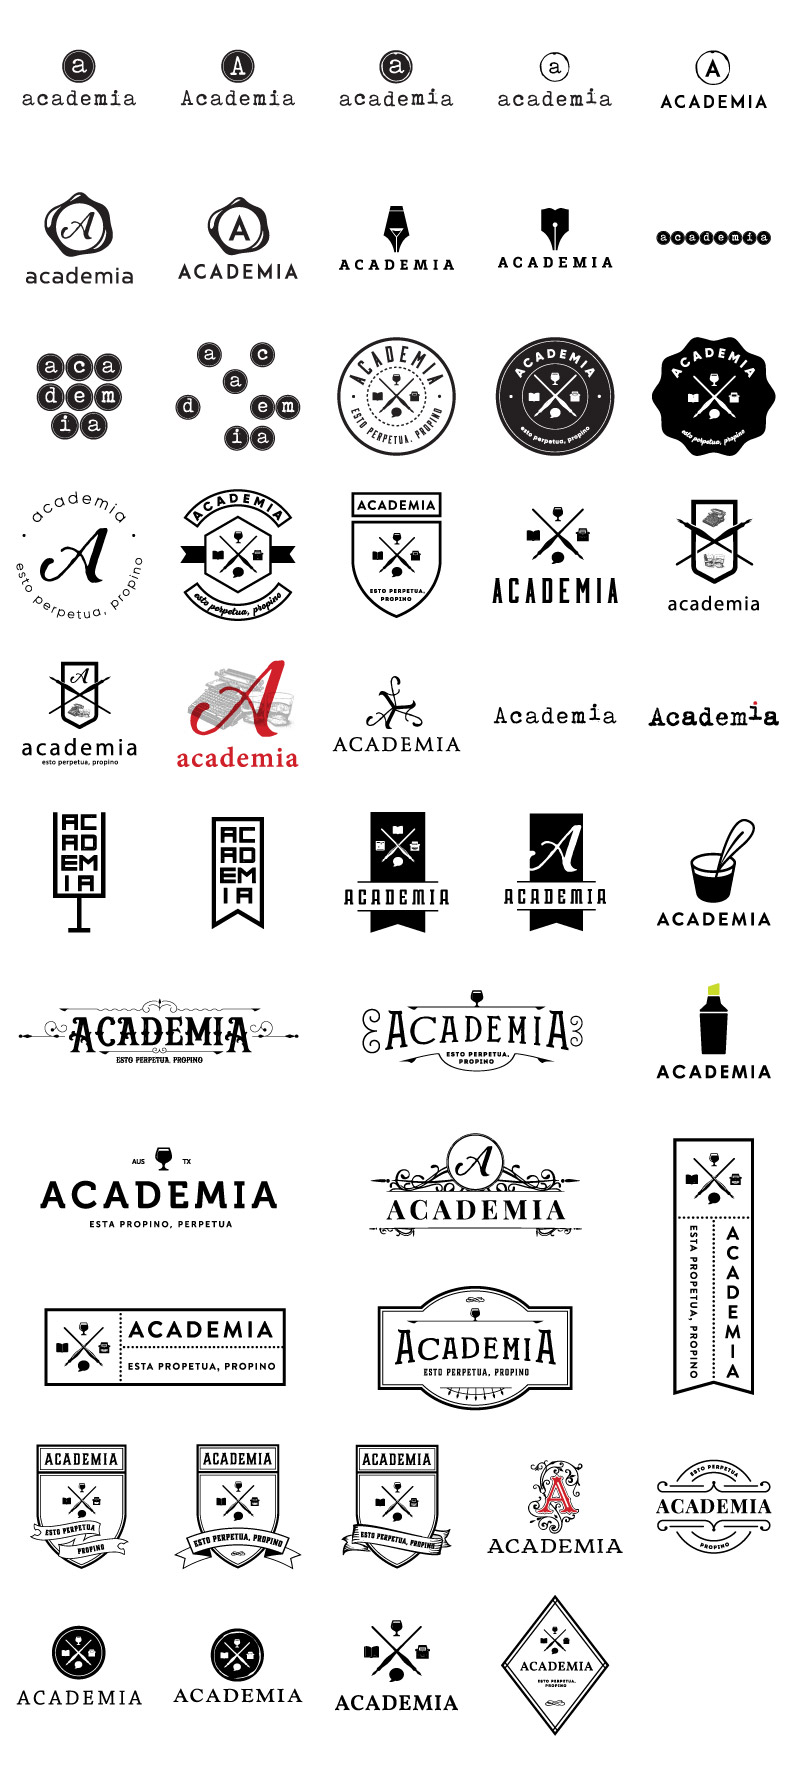 academia-logos-2